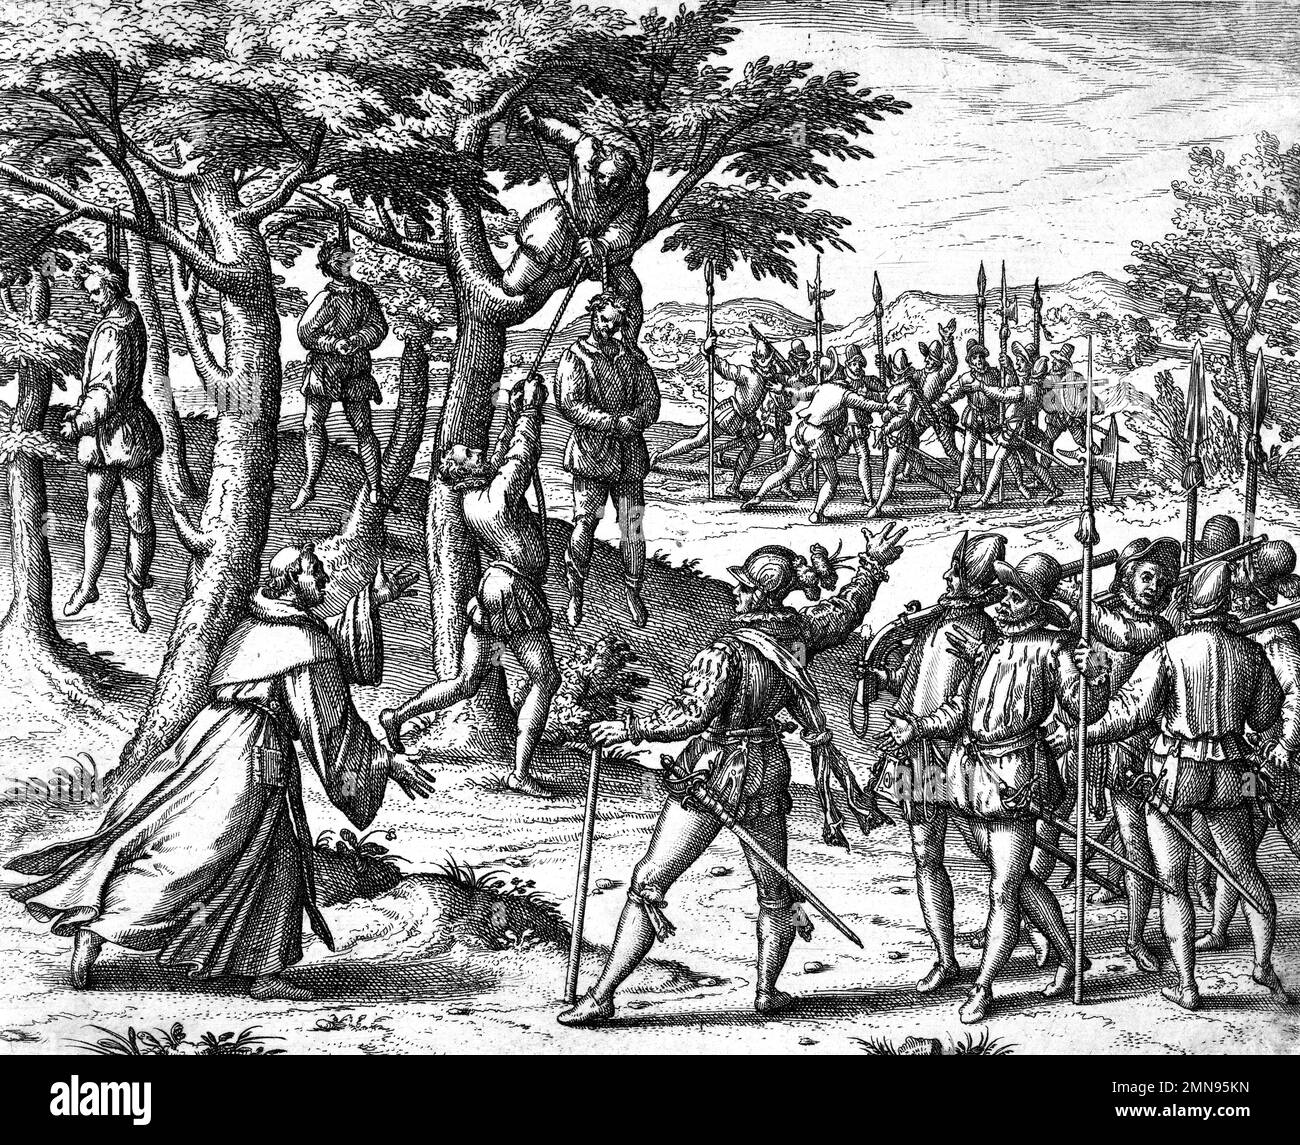 Theodor de Bry. Incisione di Cristoforo Colombo su un soldato mutino dell'incisore olandese Theodor de Bry (Theodorus de Bry: 1528-1598), incisione / stampa letteraria, 1594 Foto Stock